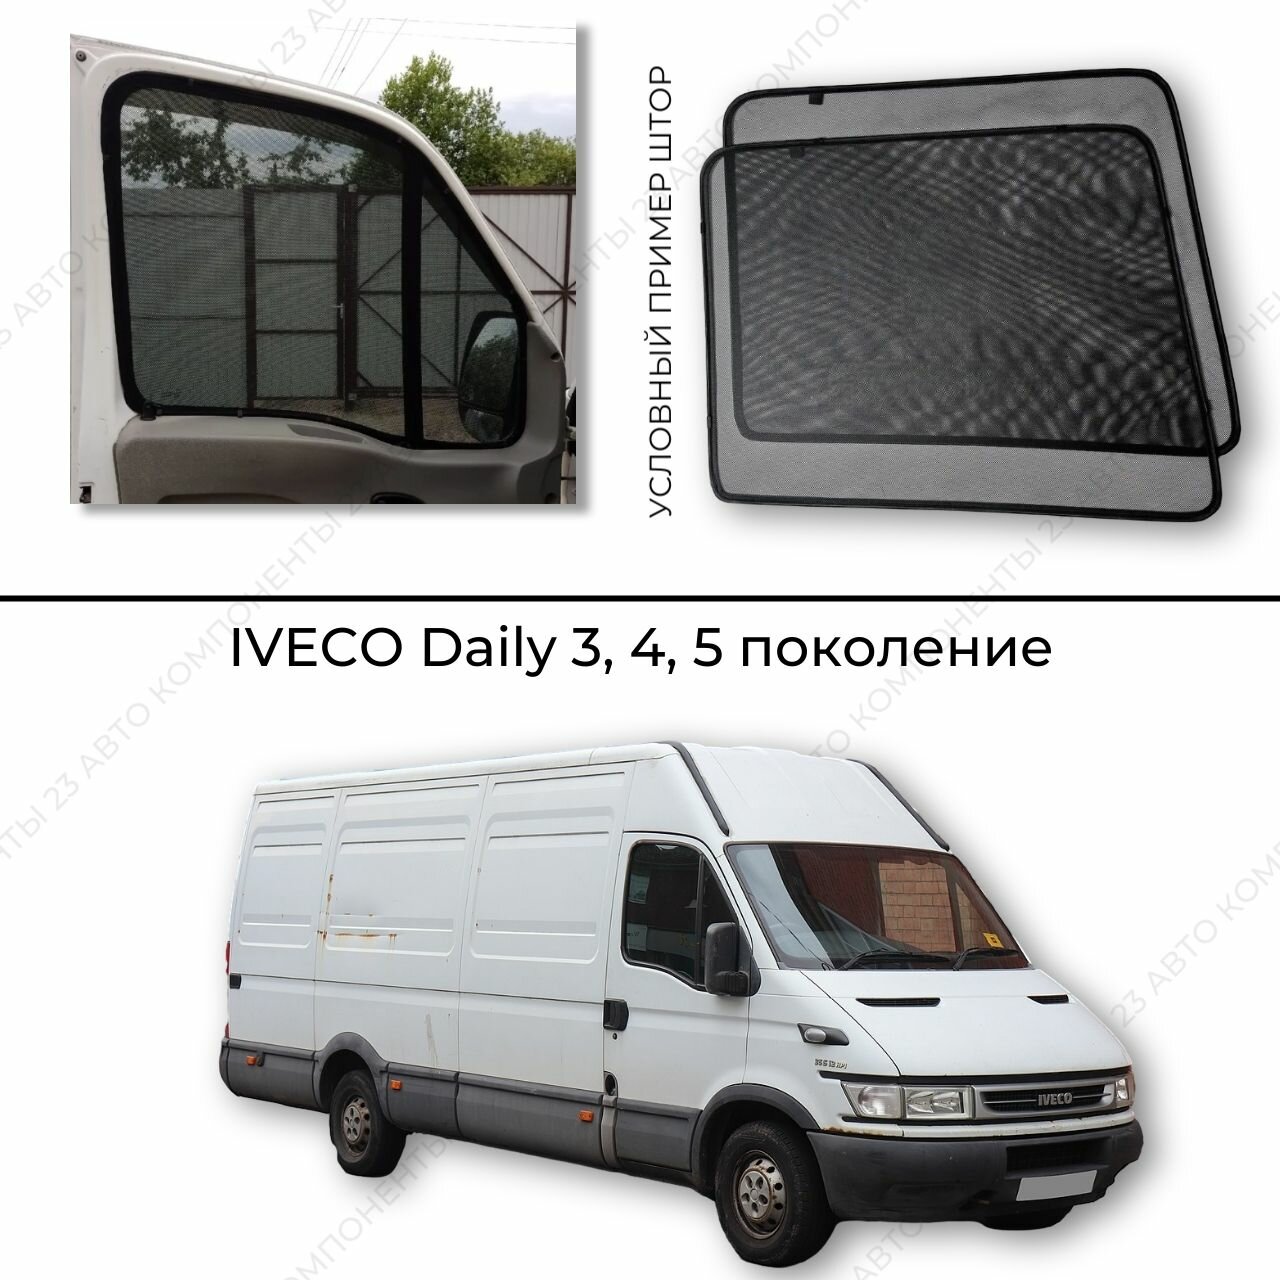 Каркасные шторки на Iveco Daily 3 4 5 поколение / Ивеко дейли съёмная тонировка / автошторки / магнитные шторки на грузовик